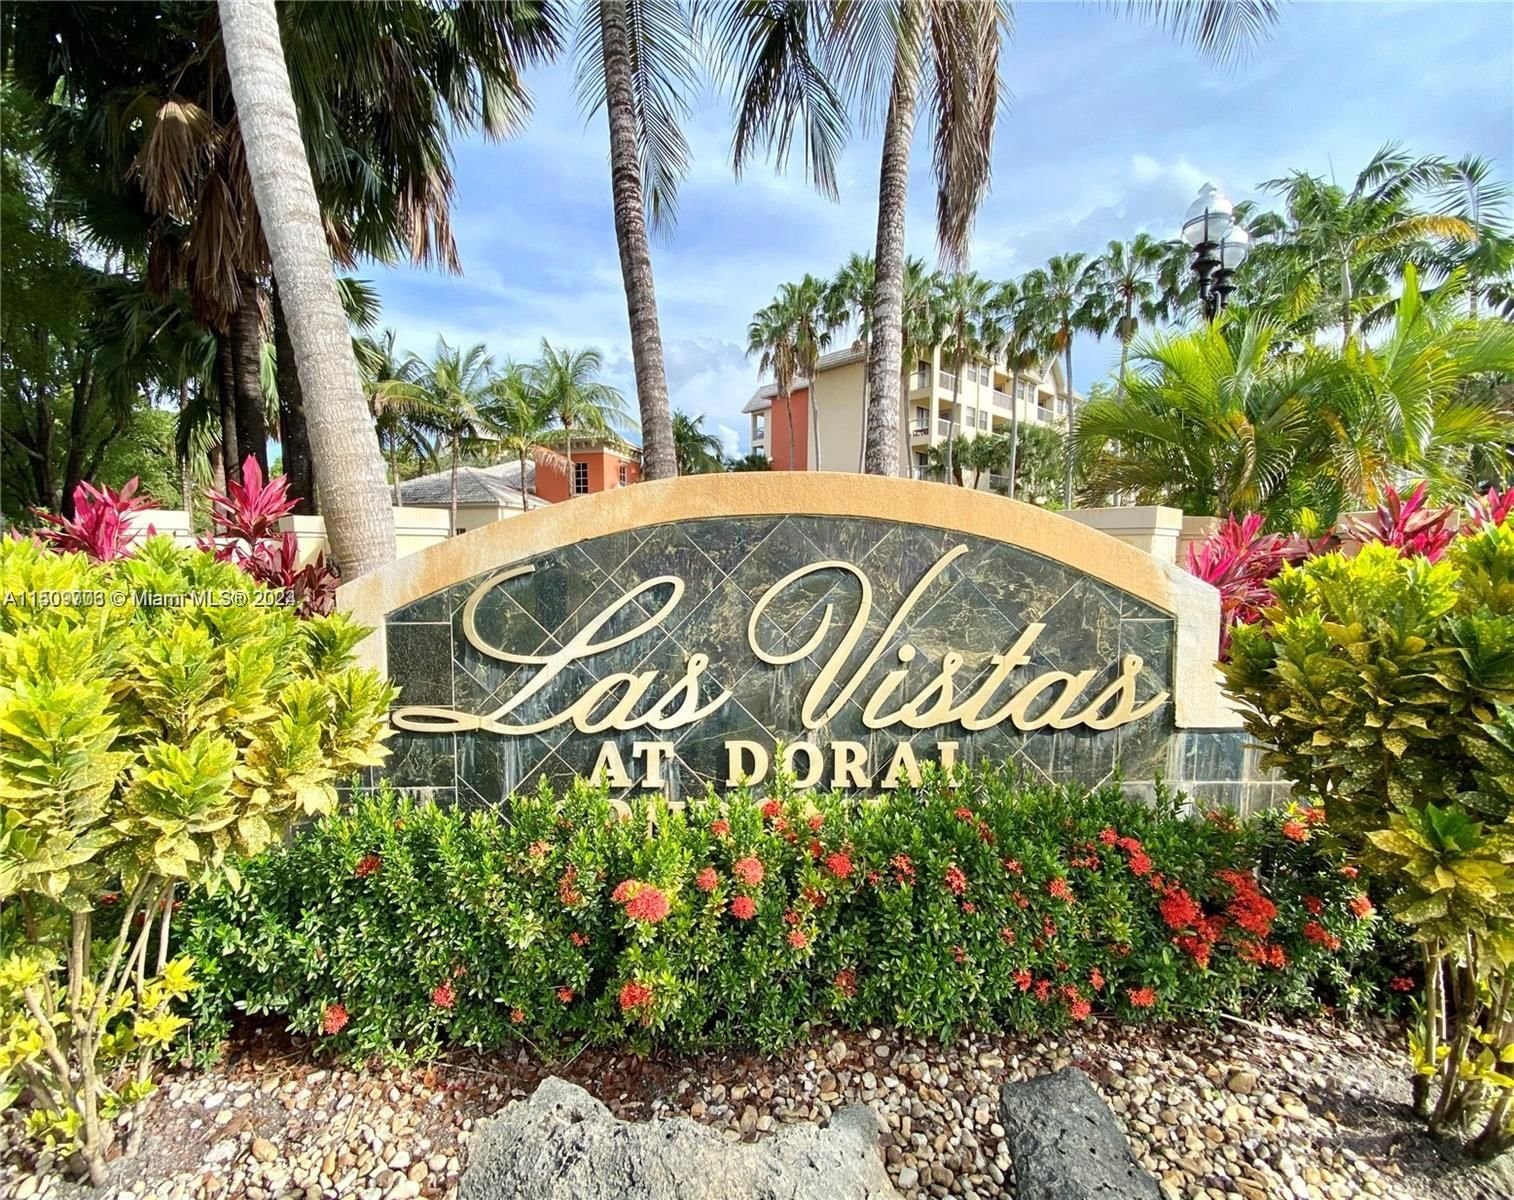 Real estate property located at 8290 Lake Dr #414, Miami-Dade County, LAS VISTAS AT DORAL CONDO, Doral, FL